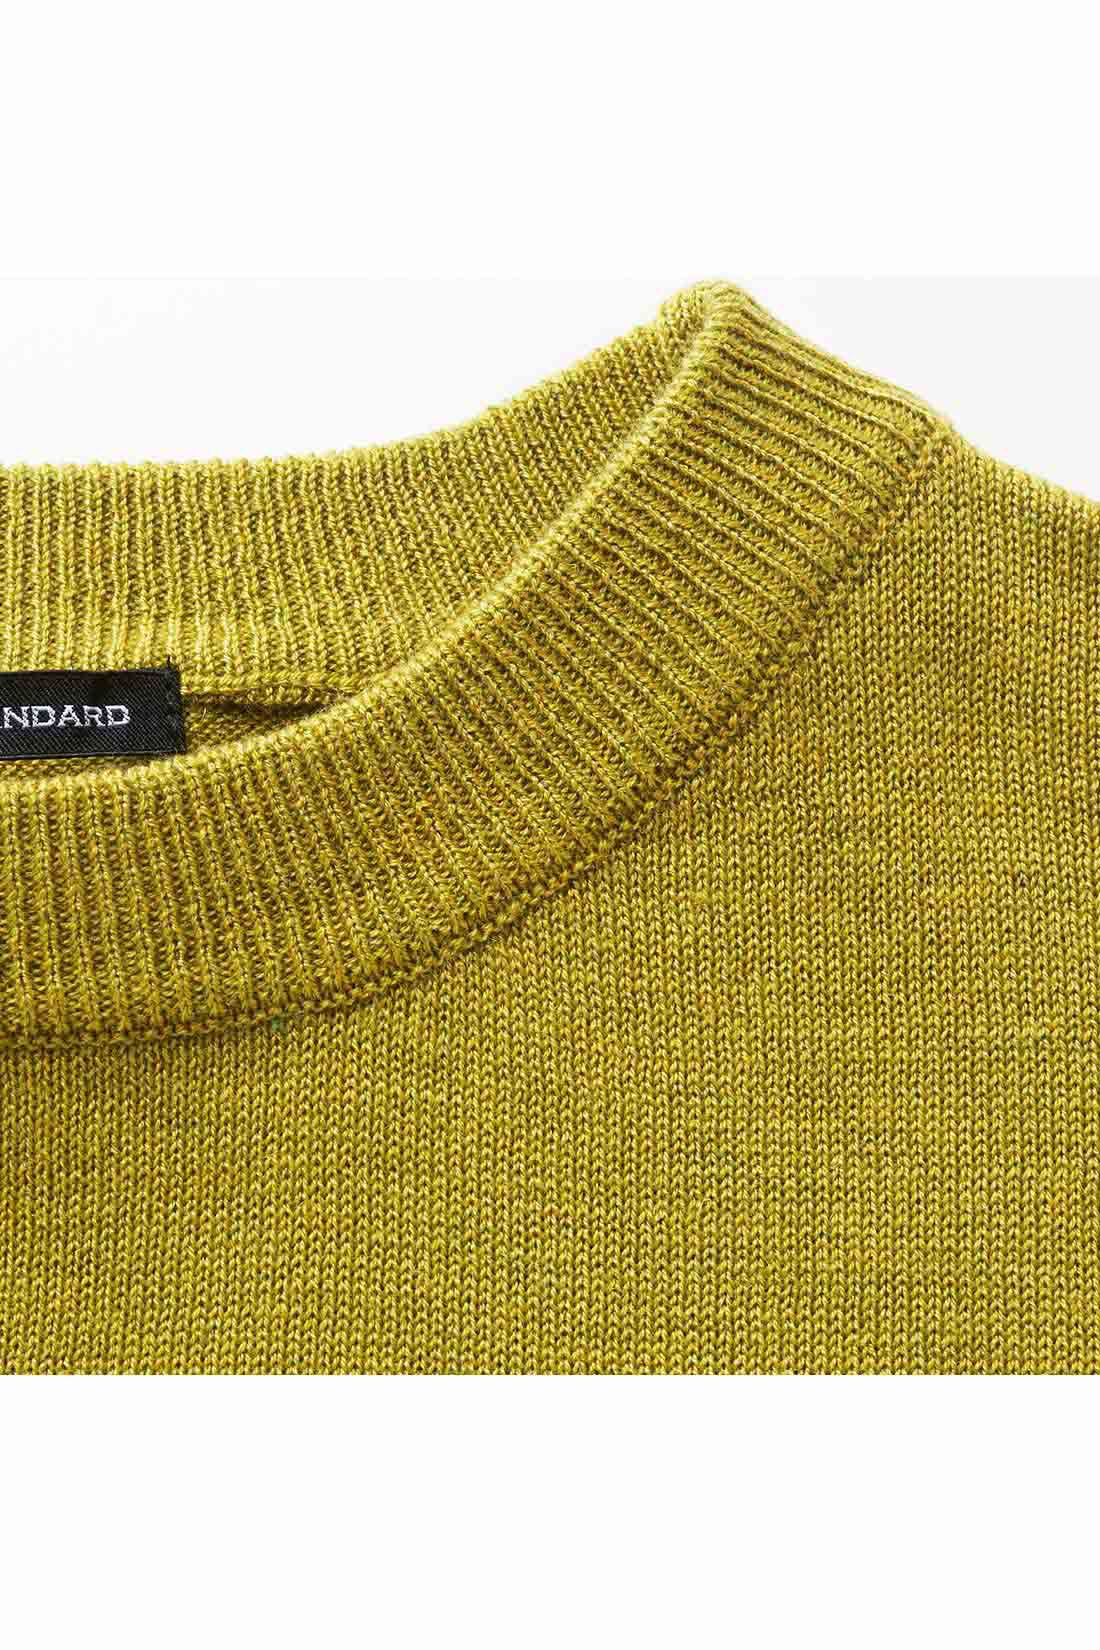 Real Stock|THREE FIFTY STANDARD　ボリューム袖のニットセーター〈イエローグリーン〉|ハイゲージで上品な雰囲気。コートの中の差し色にして装いのアクセントに。